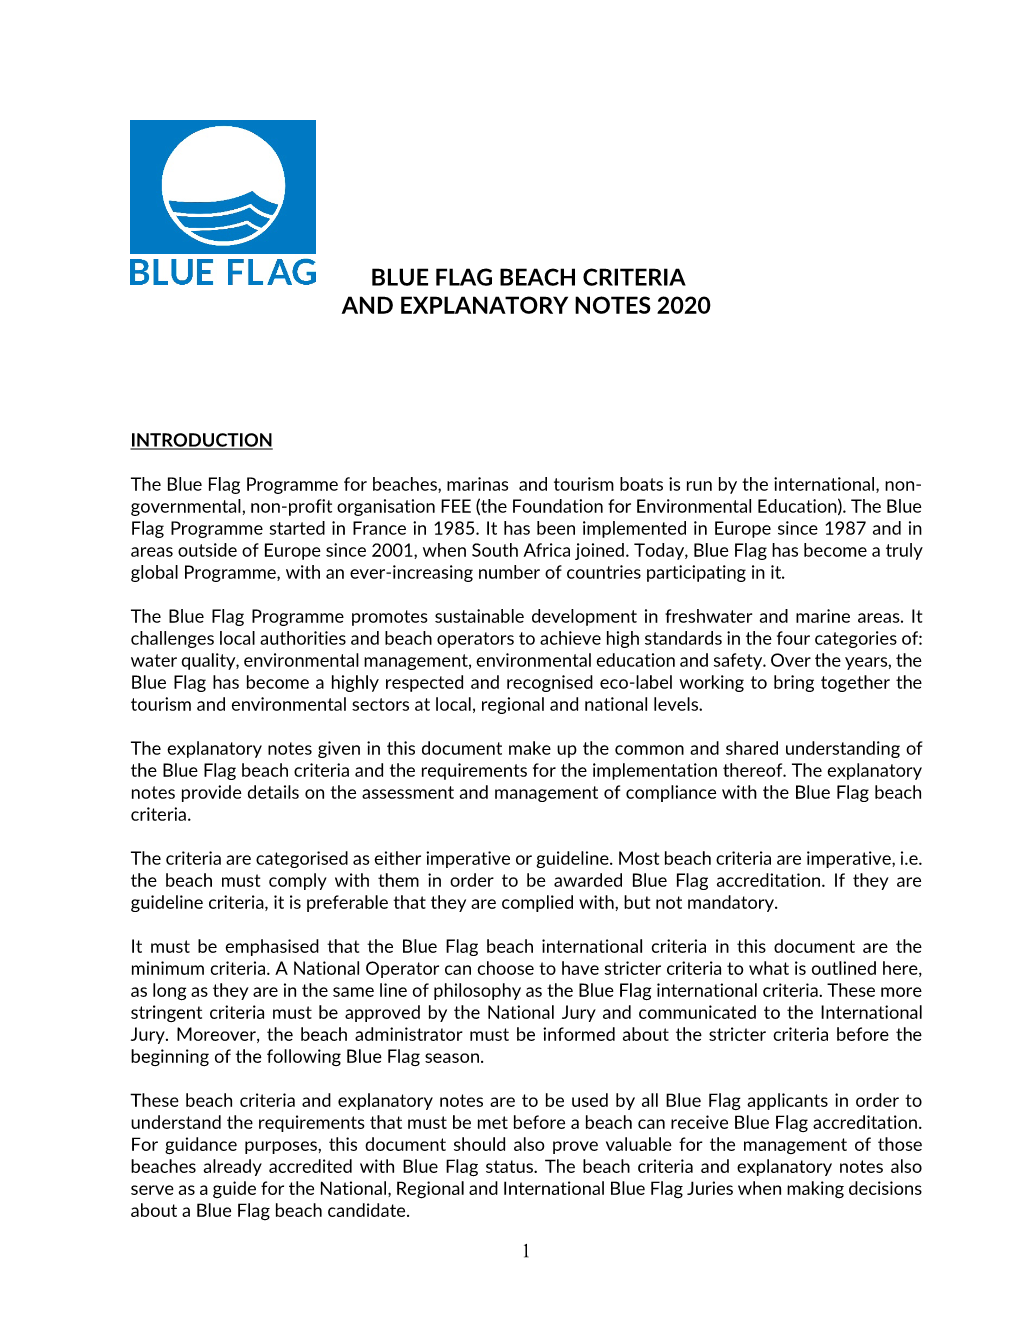 Blue Flag Beach Criteria and Explanatory Notes 2020